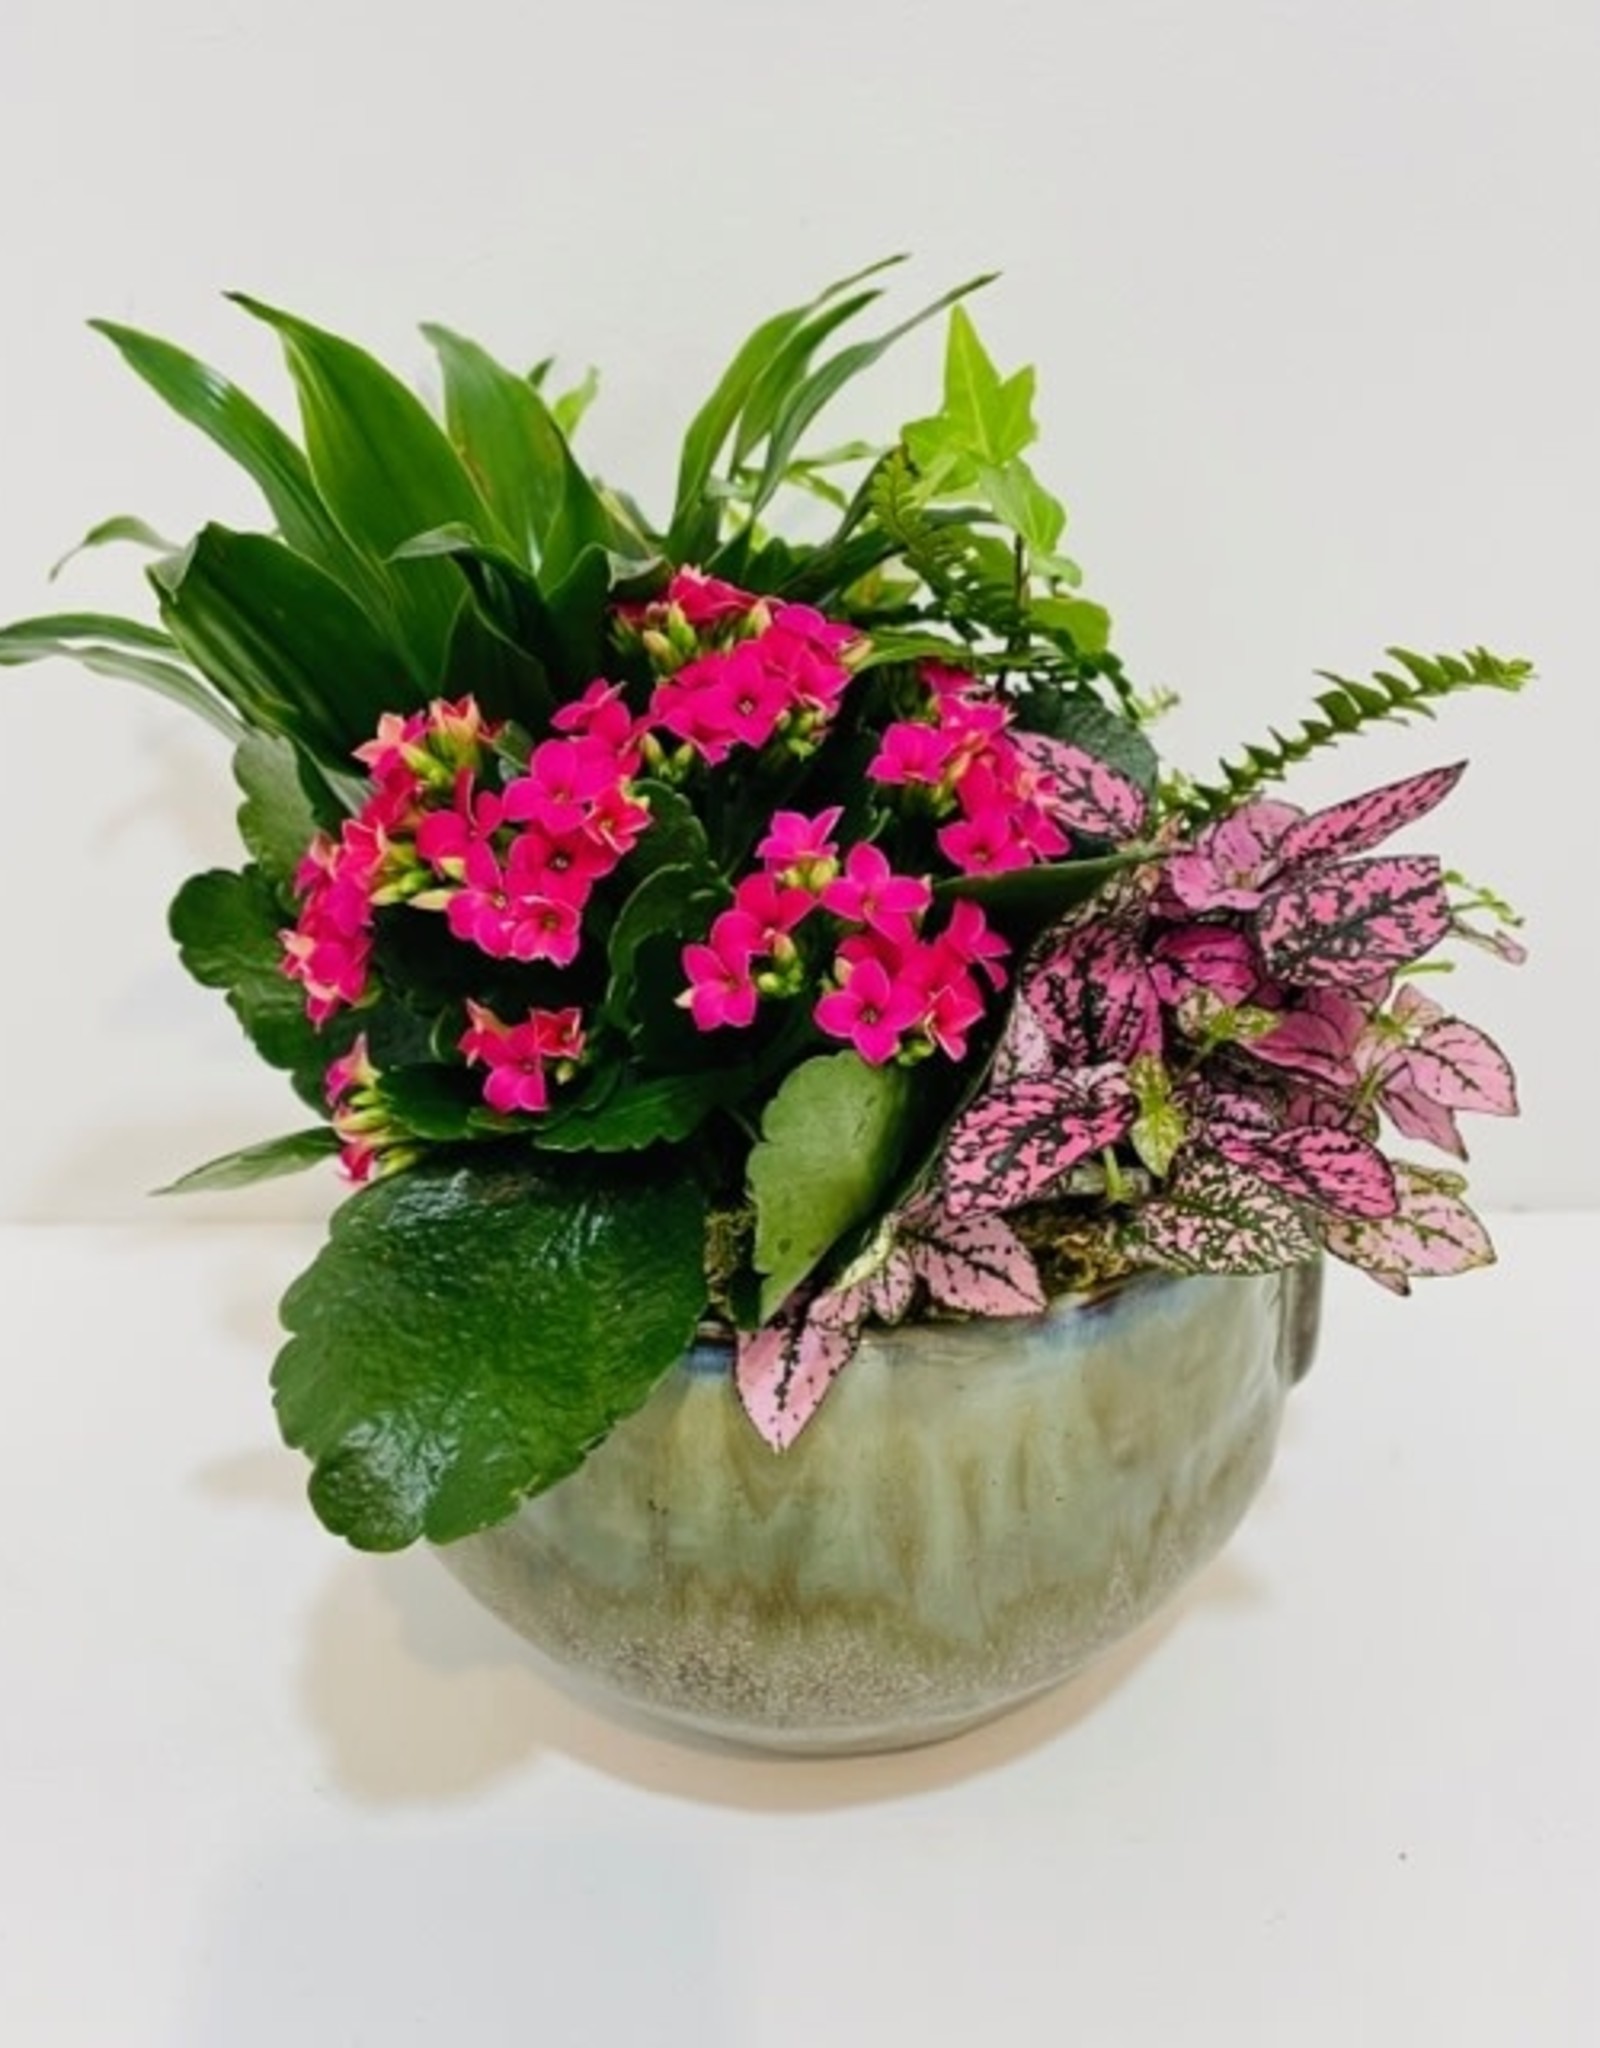 6" Flowering Plant Arrangement in Green Pot